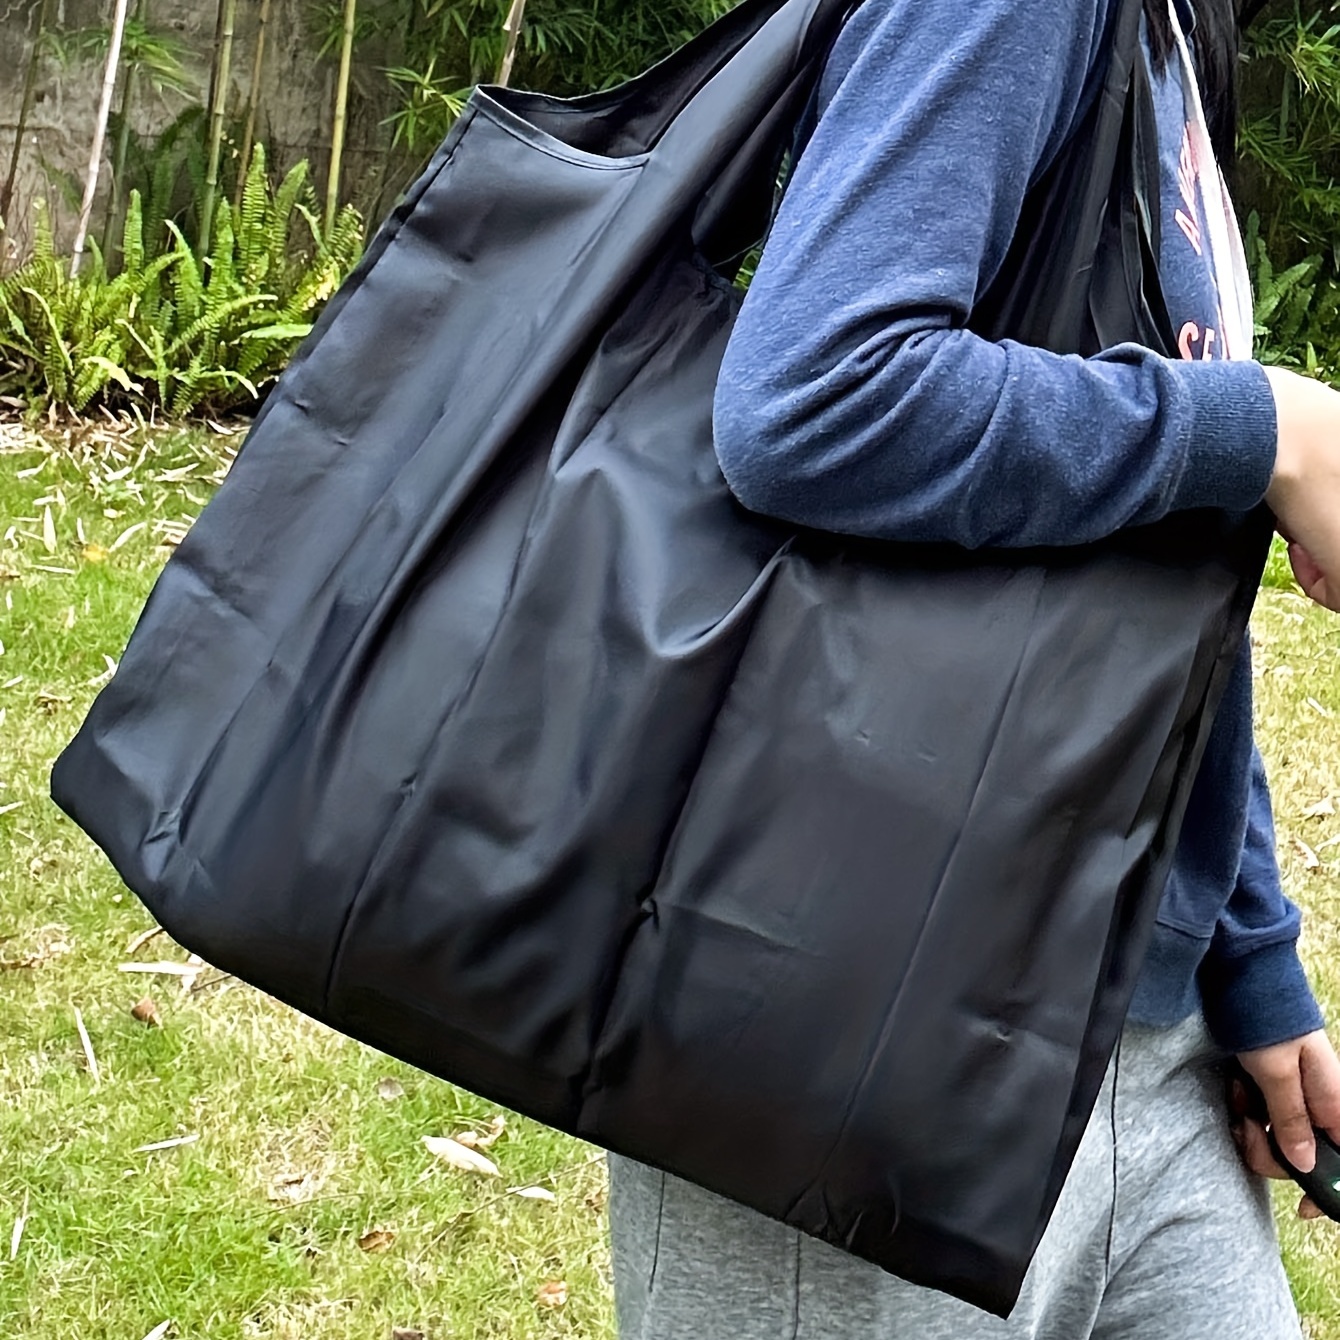 Foldable Large Capacity Shopping Bag Lightweight Nylon - Temu